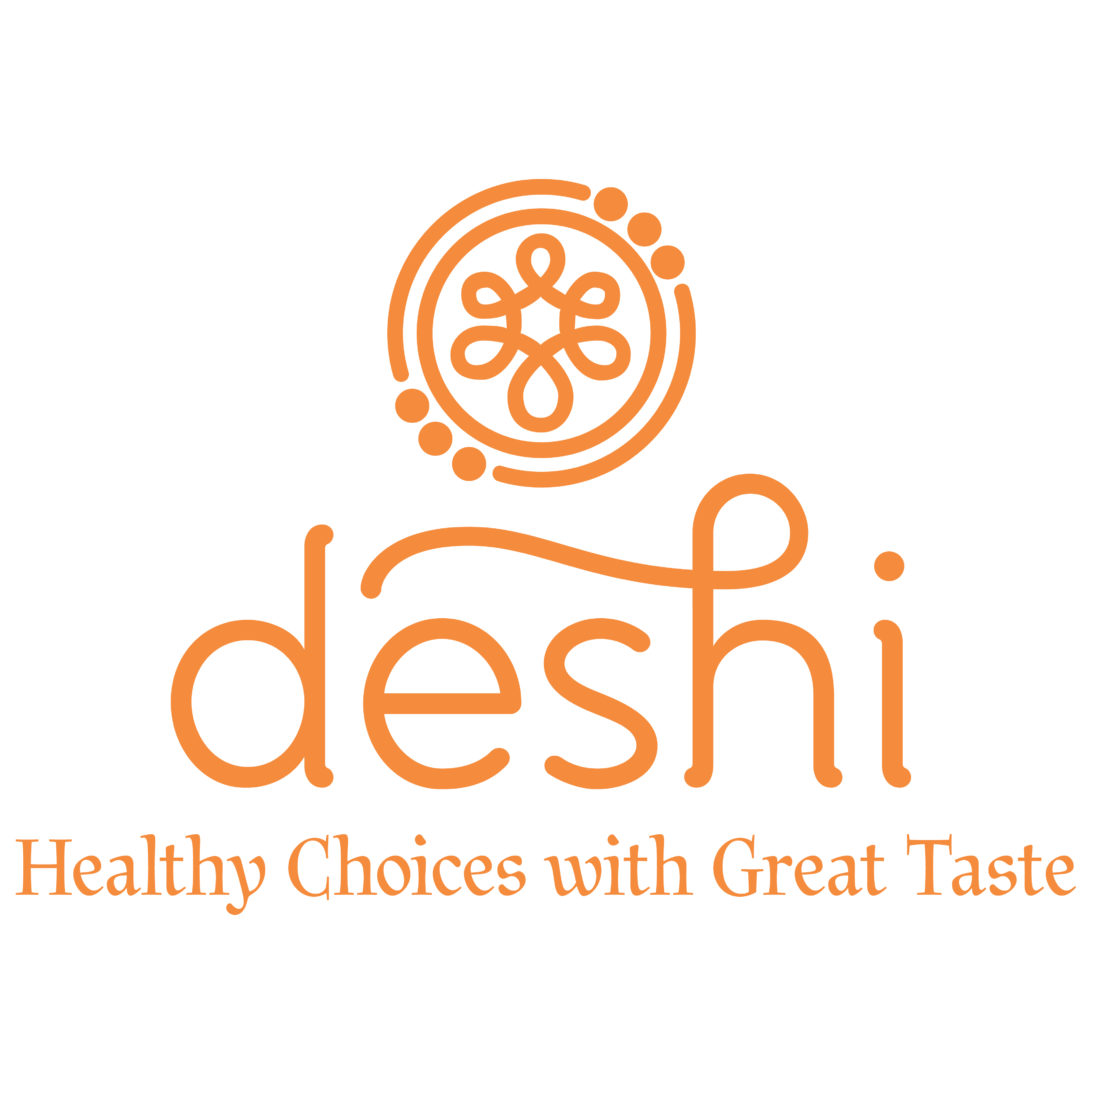 Deshi- Logo-01